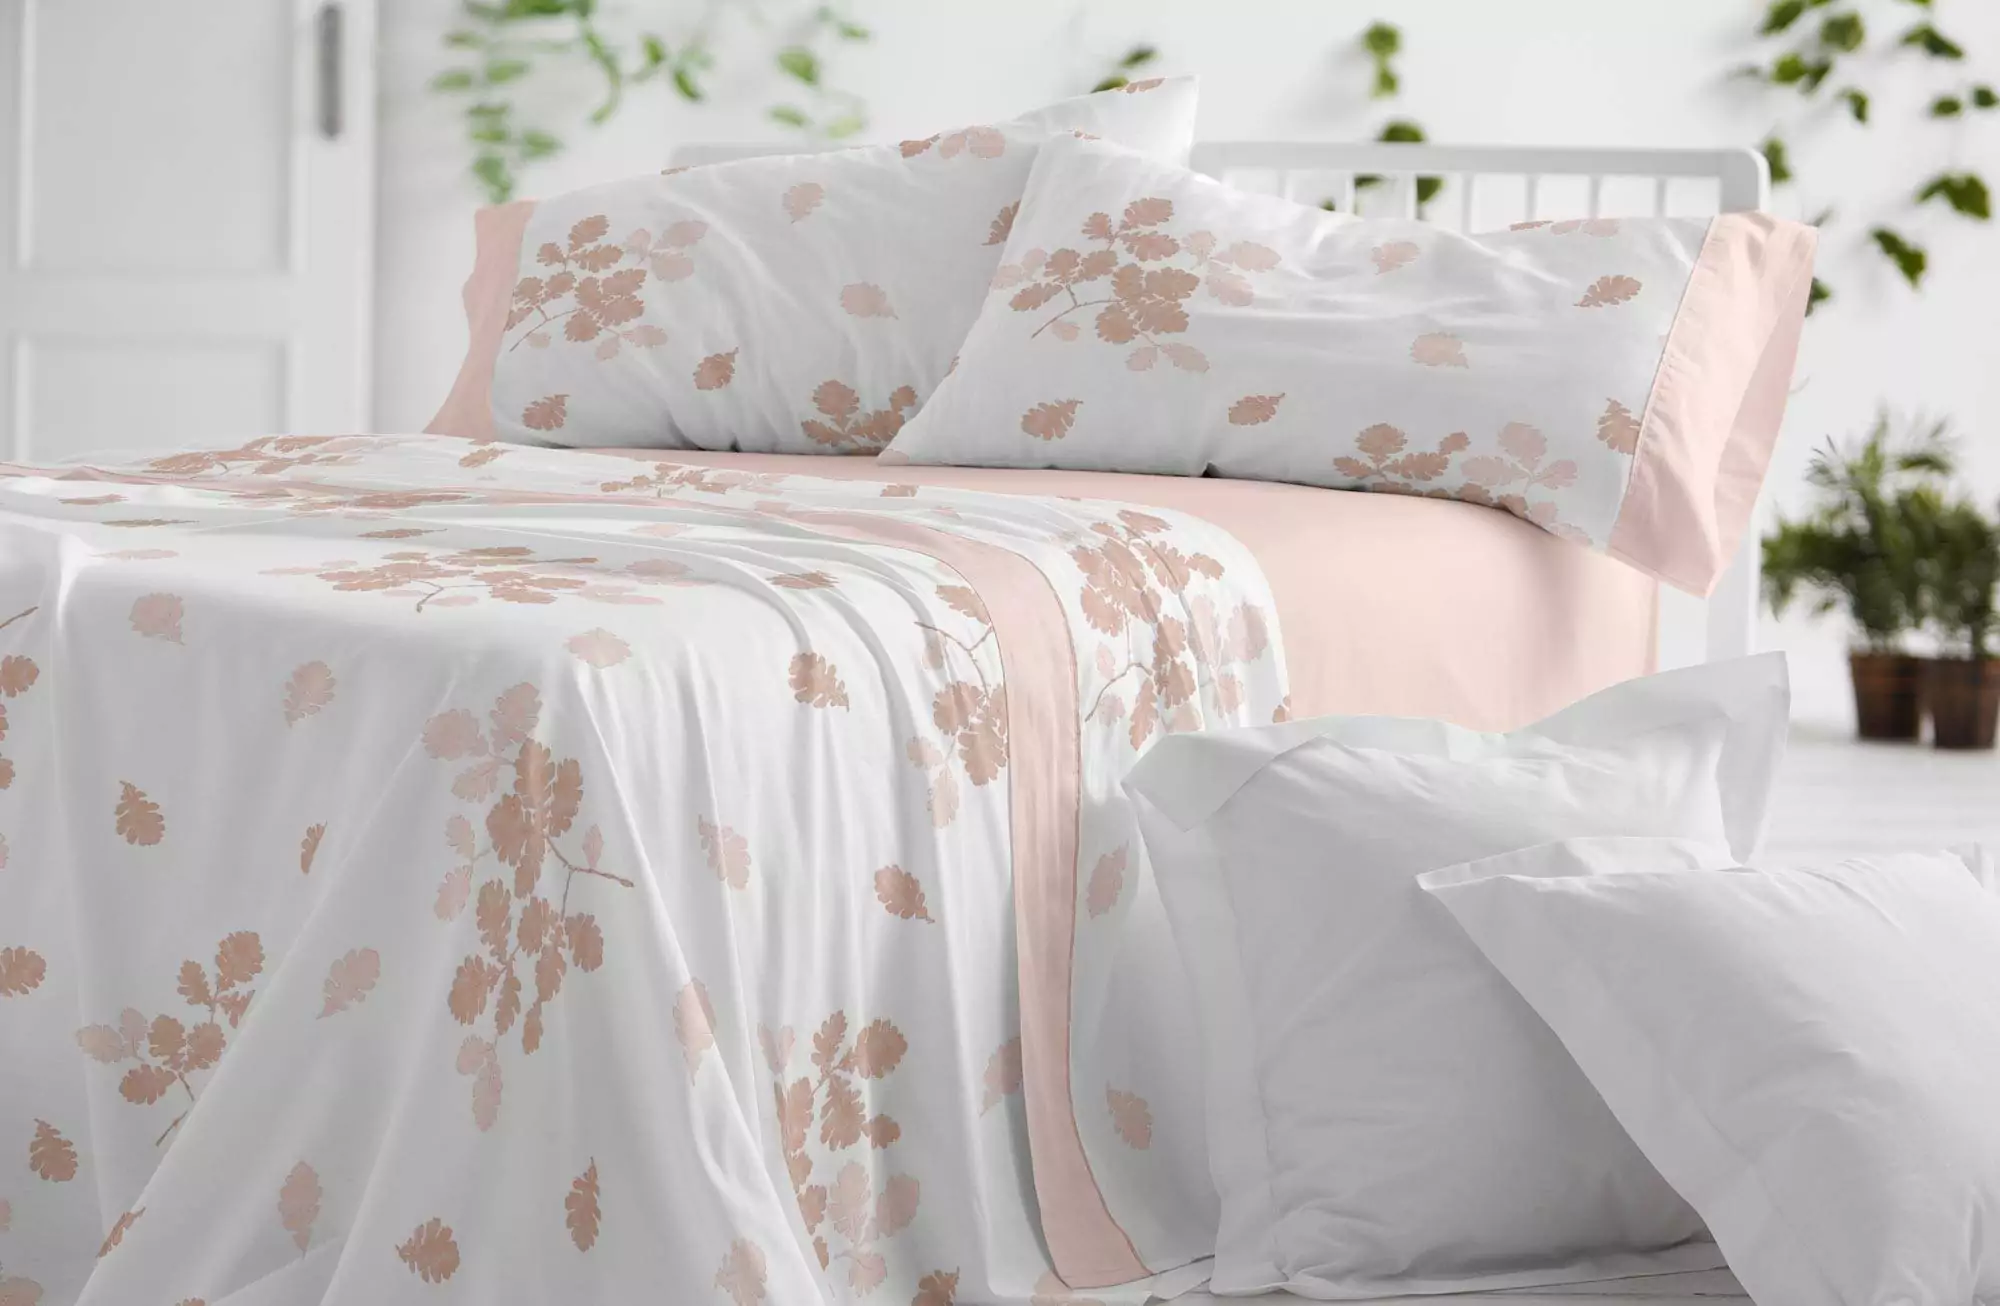 Juego de sábanas franela natural cama de 150/160 100% algodón